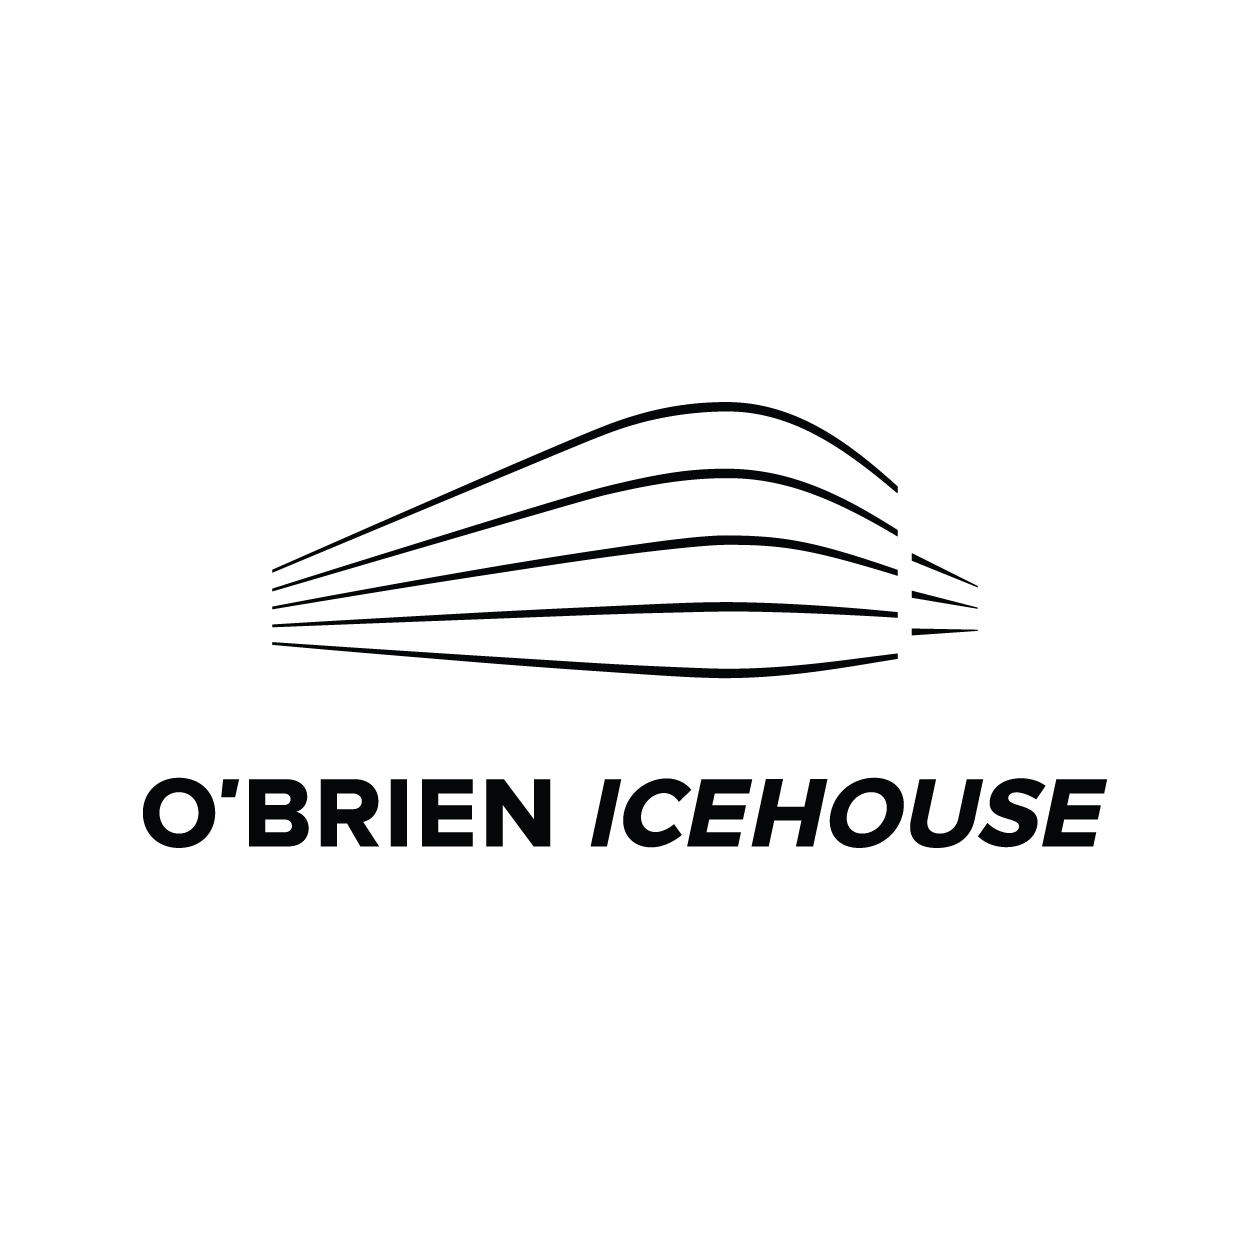 O’Brien Icehouse